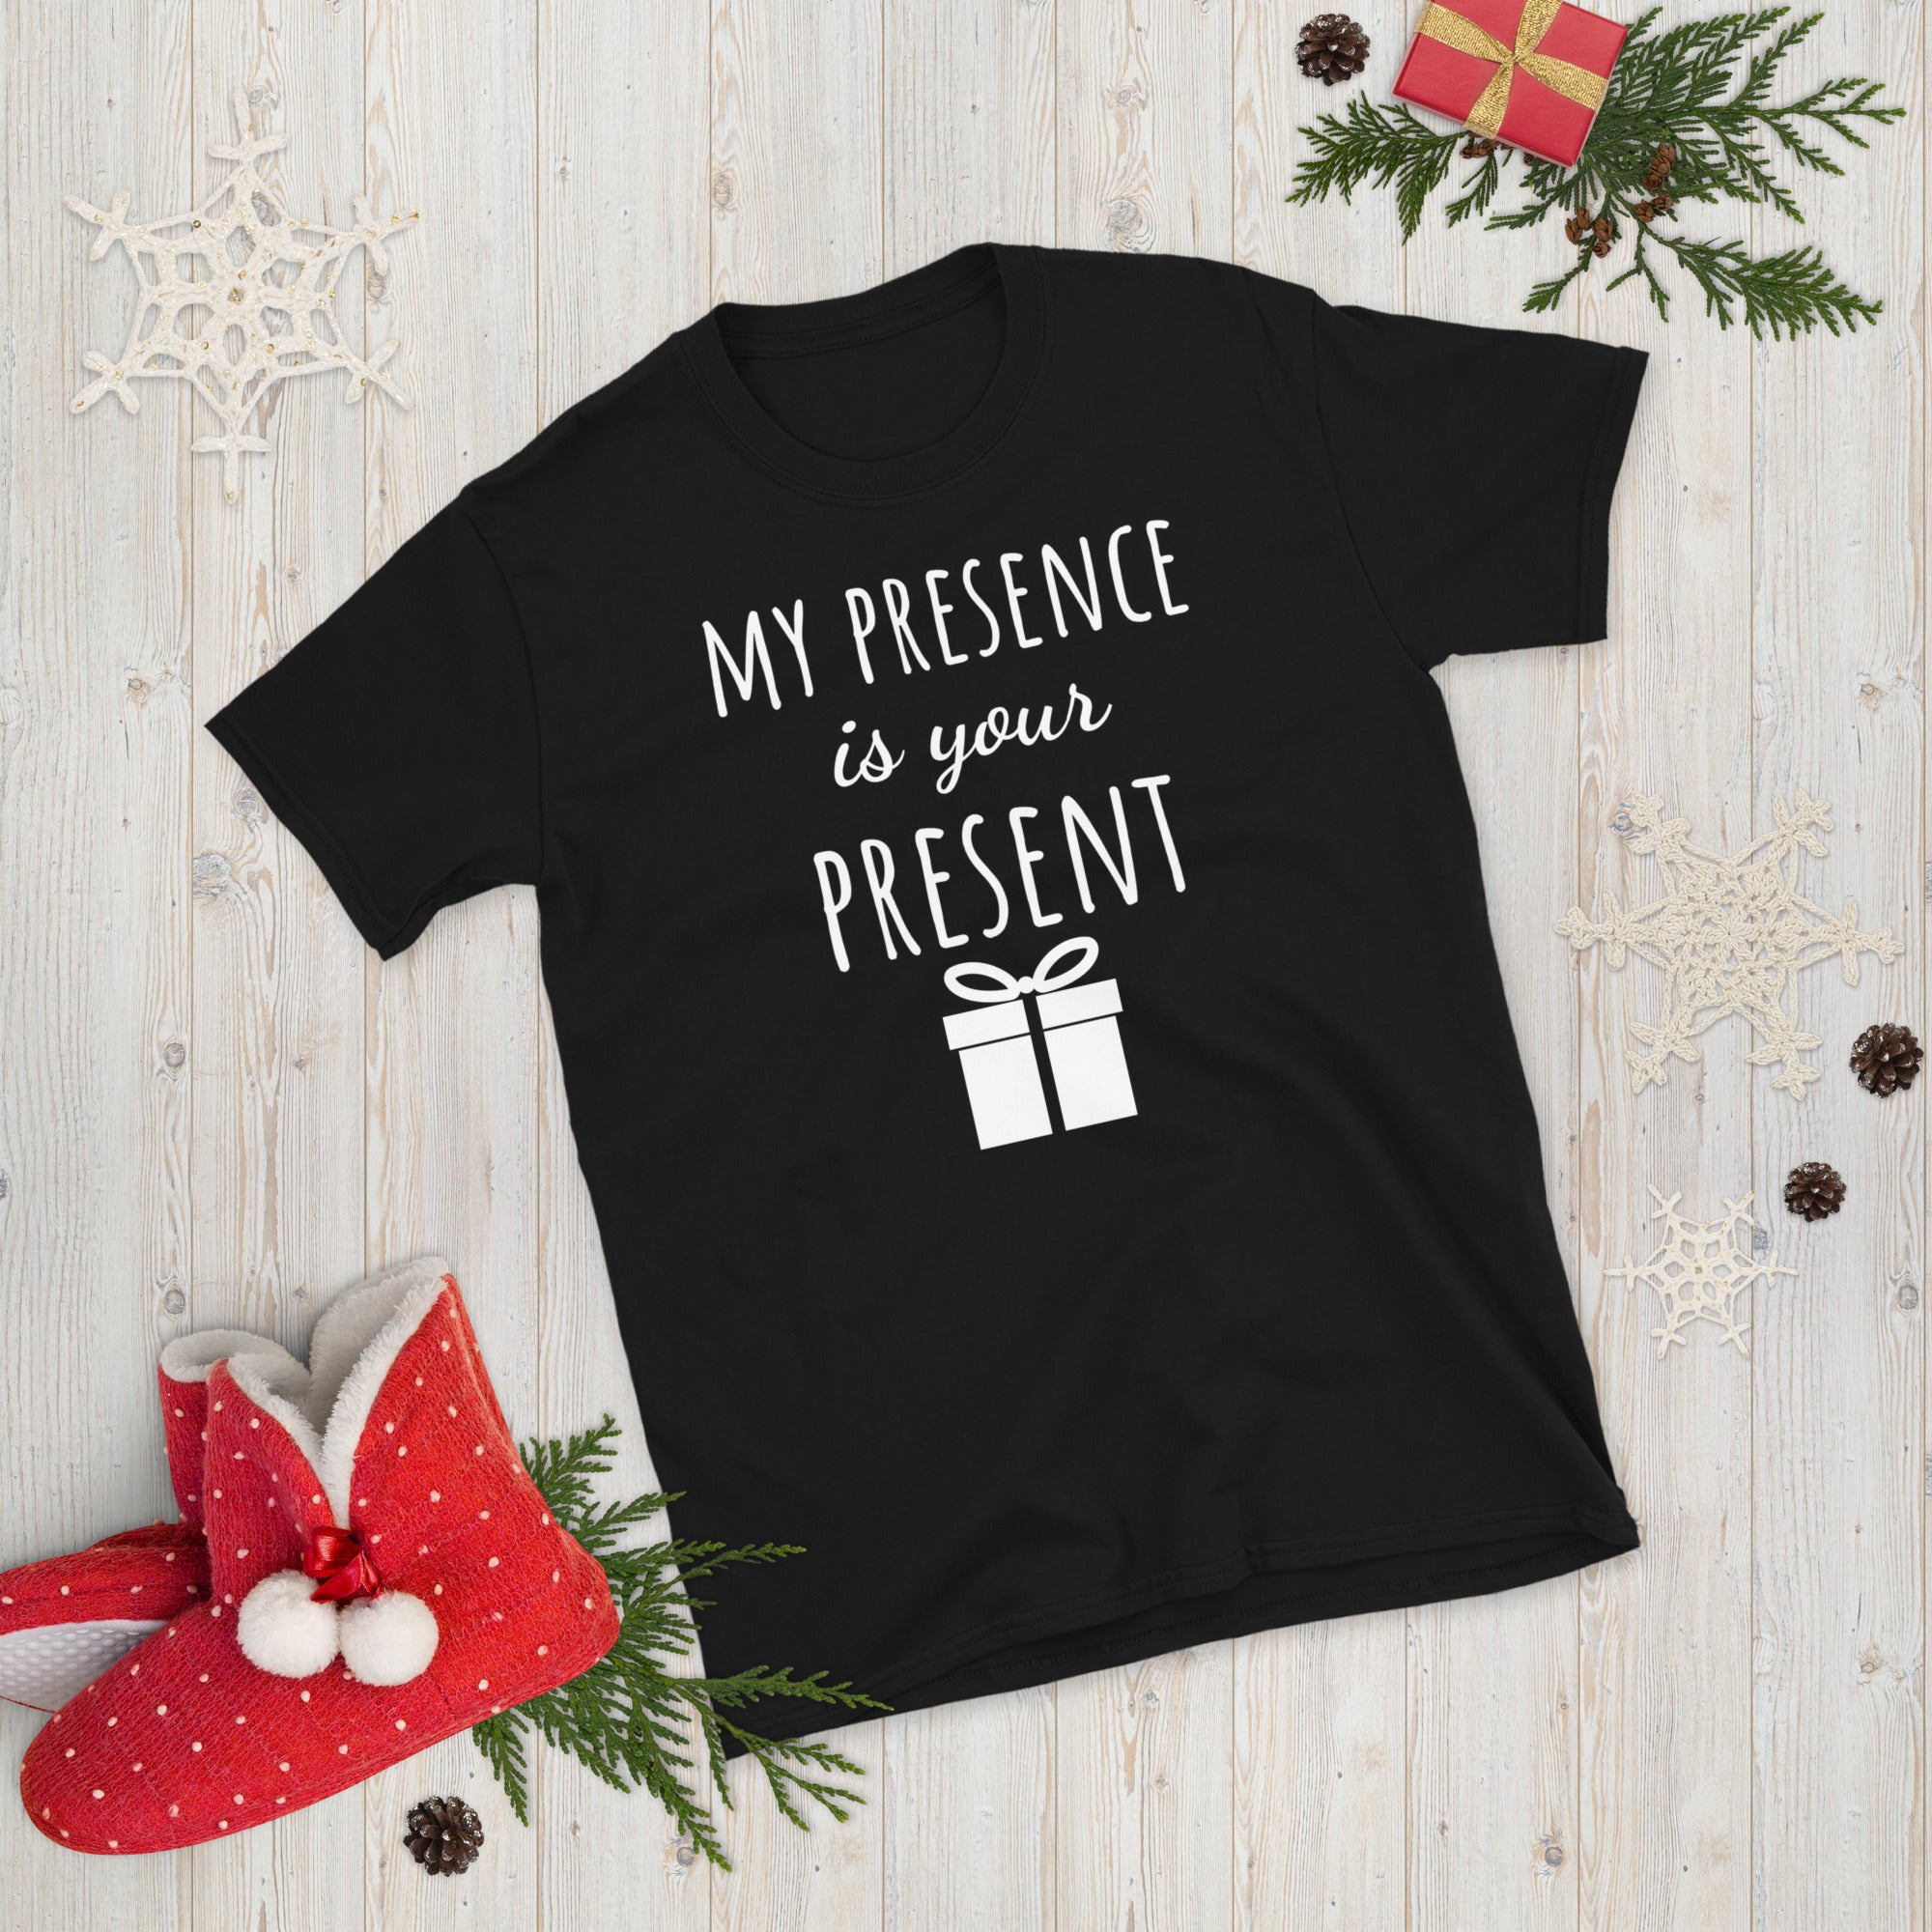 My Presence Is Your Present Shirt, Christmas Shirt for Women, Your Present Shirt, Gangsta Wrapper, Xmas Women Shirts, Funny Christmas Pajama